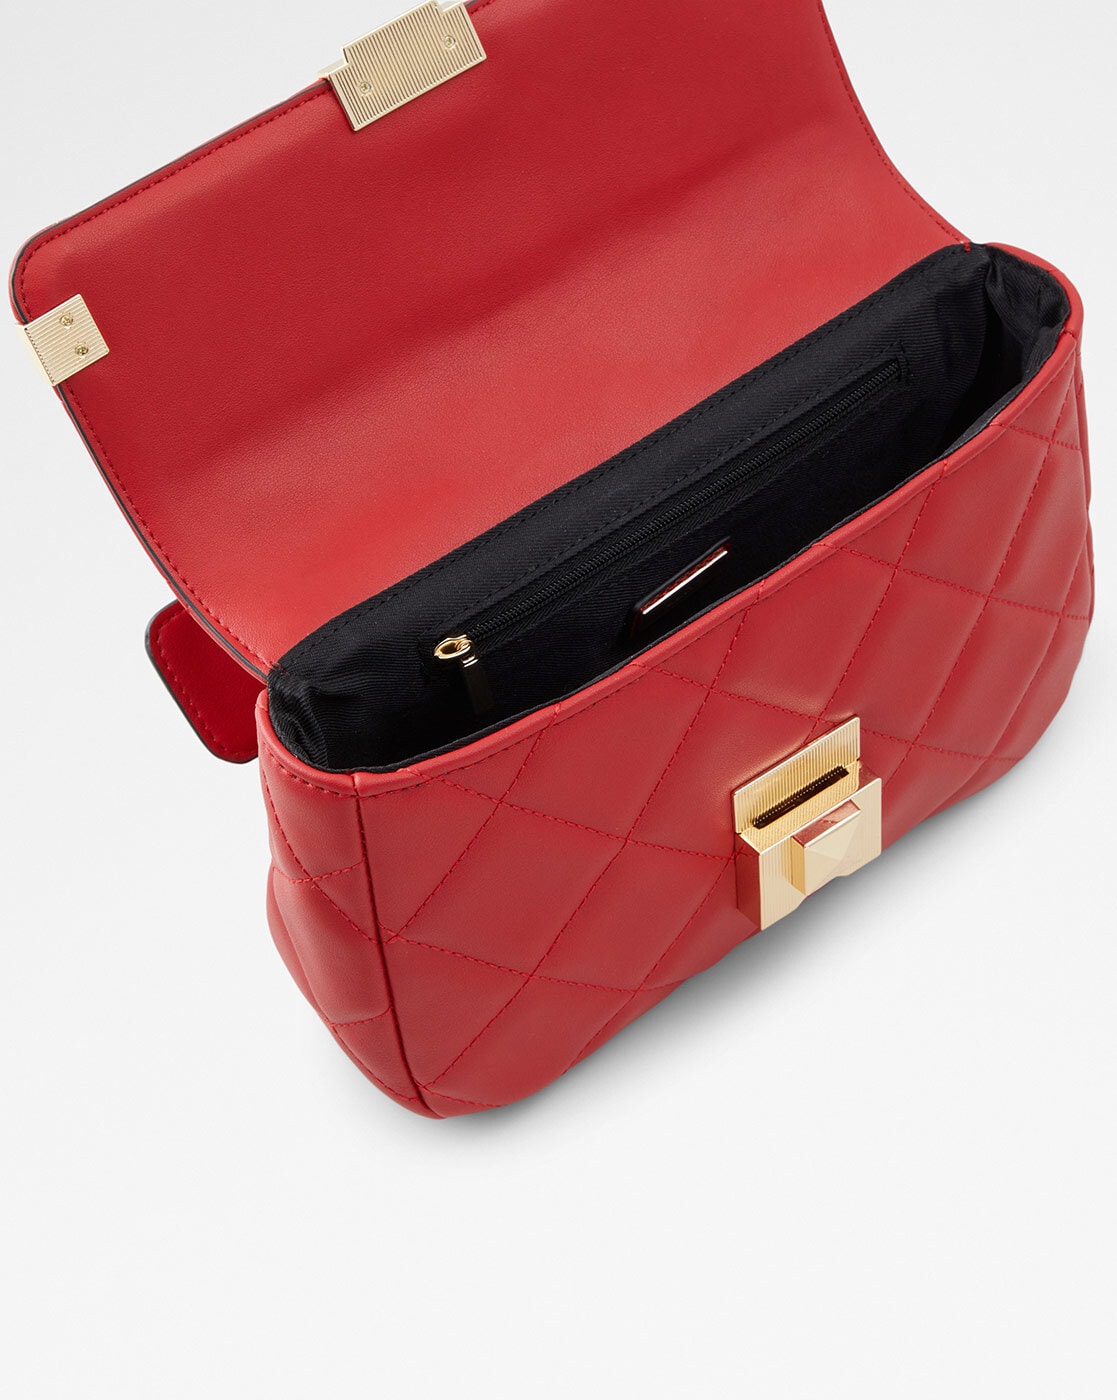 Blue white and red ALDO handbag. 💚Super nice bag... - Depop